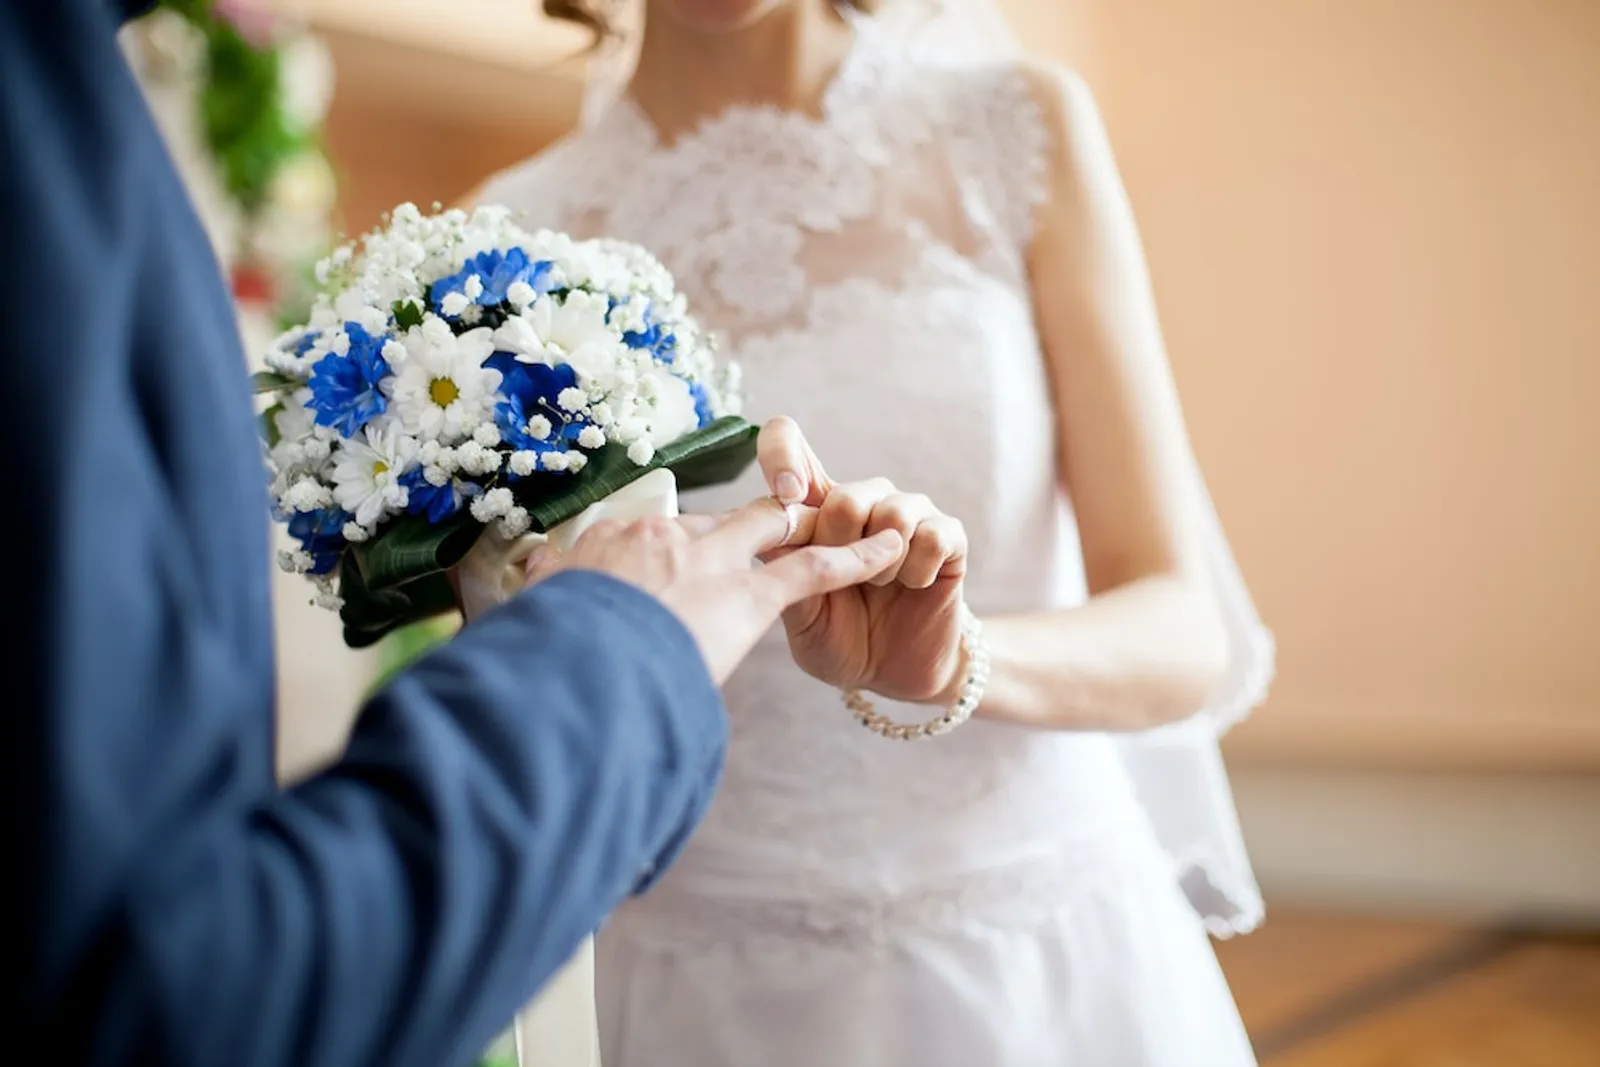 Mengapa Pernikahan Beda Agama Sering Gagal? Ini 7 Alasannya